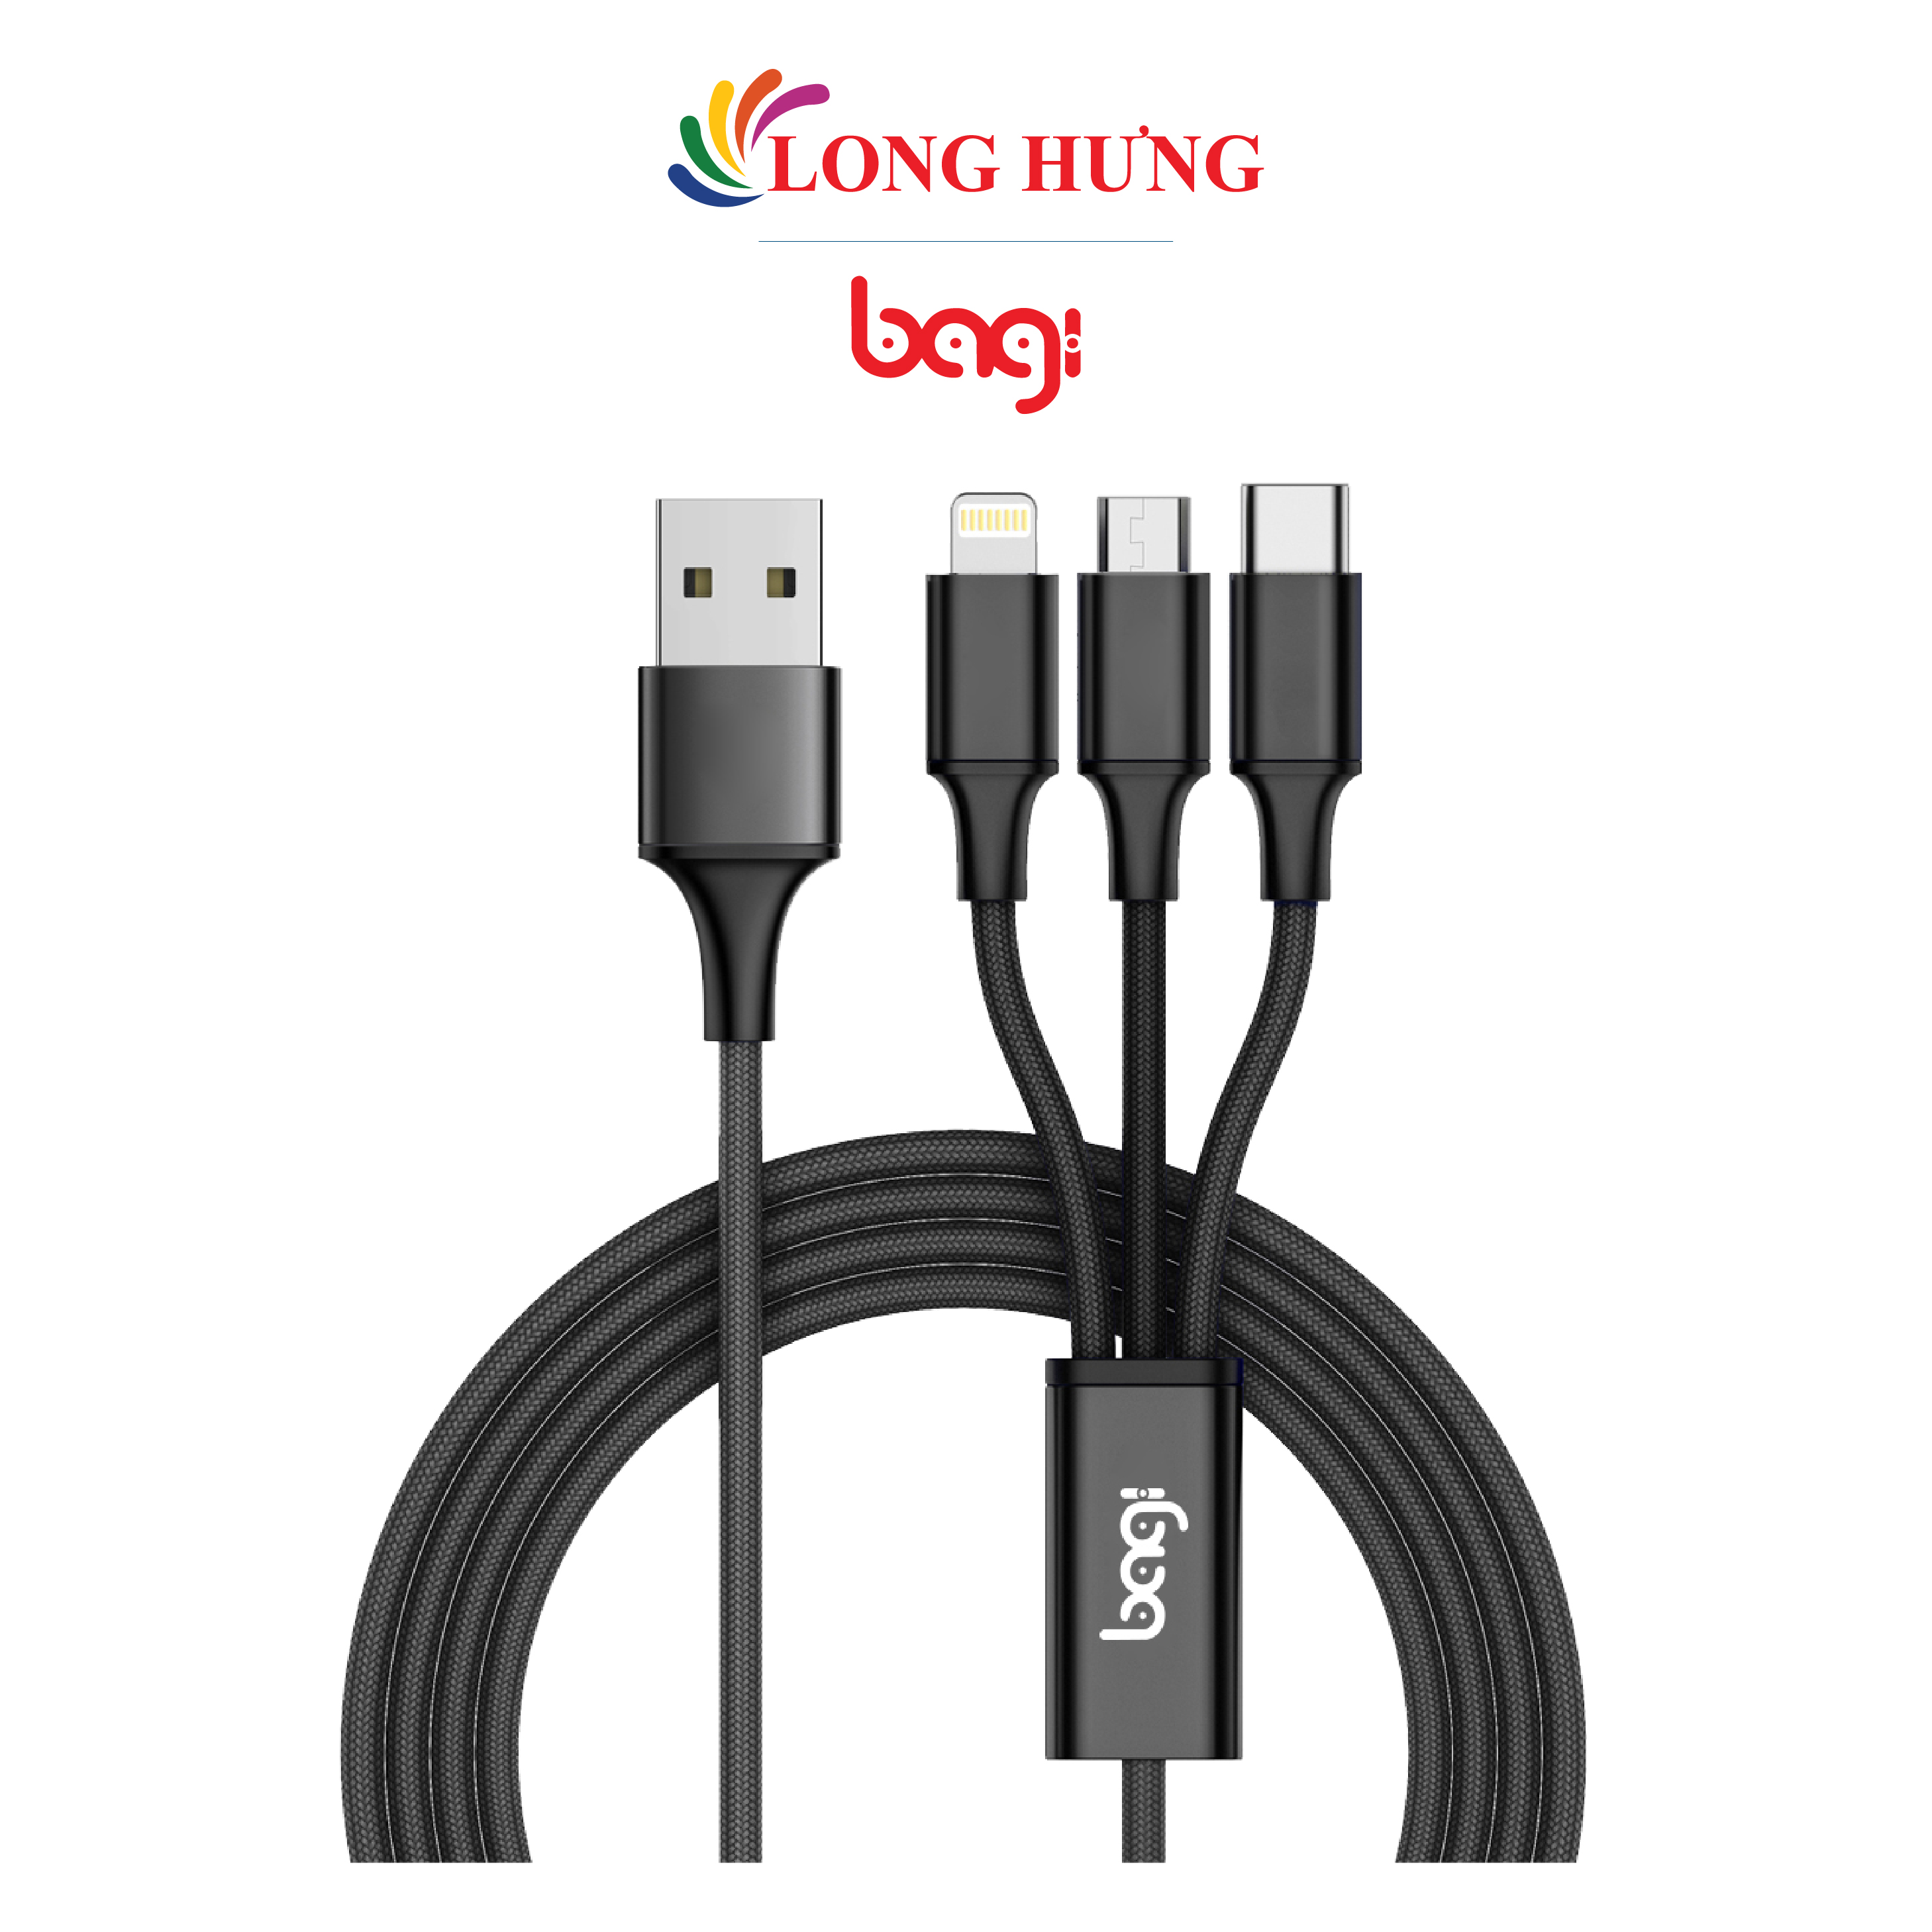 Cáp 3 trong 1 Micro USB - Lightning - USB Type-C Bagi 1.2m CB-AS12 - Hàng chính hãng